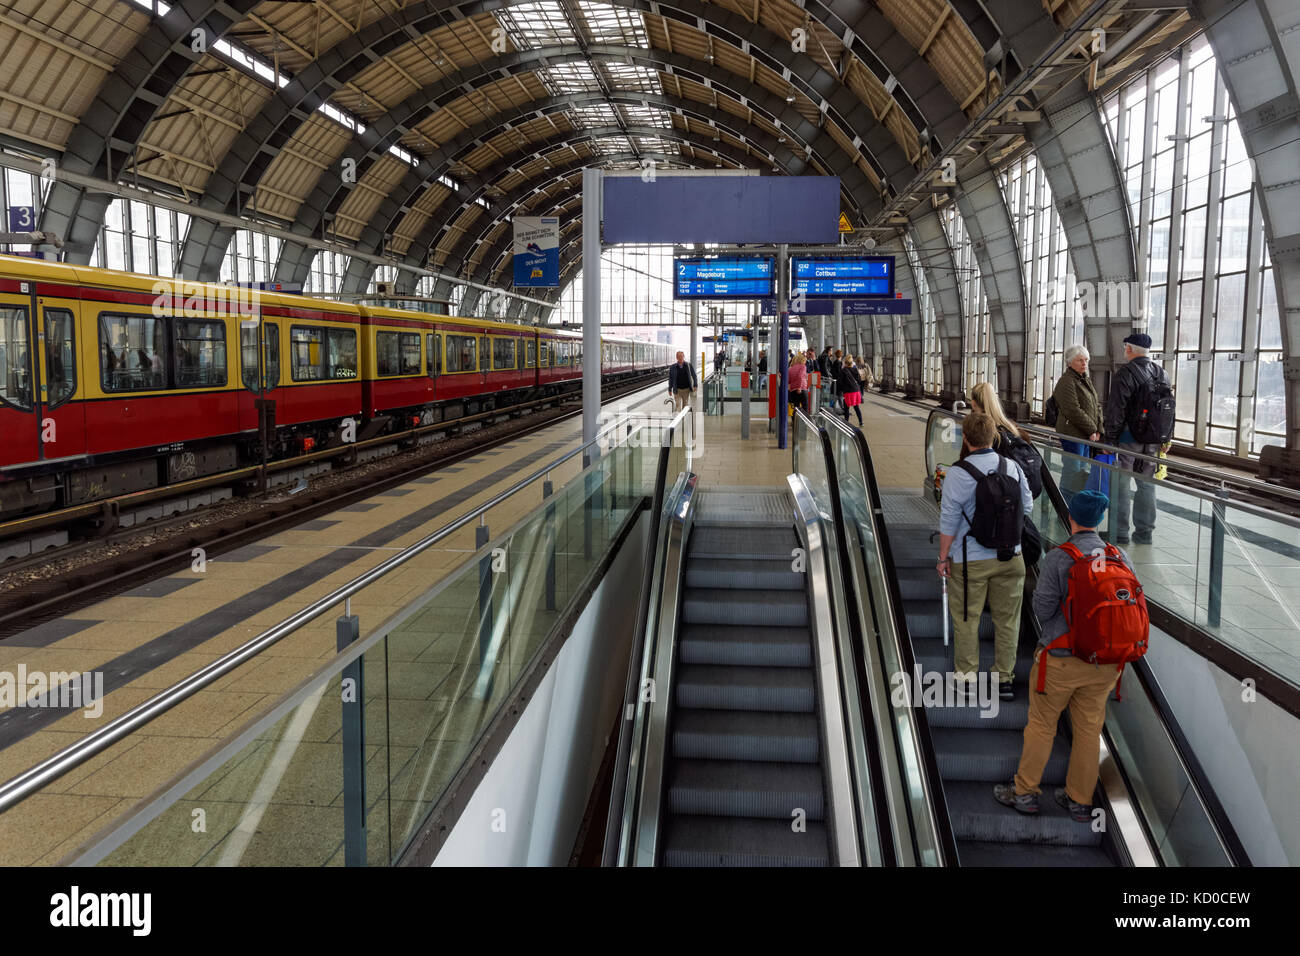 I passeggeri sulla piattaforma alla stazione di Alexanderplatz di Berlino, Germania Foto Stock